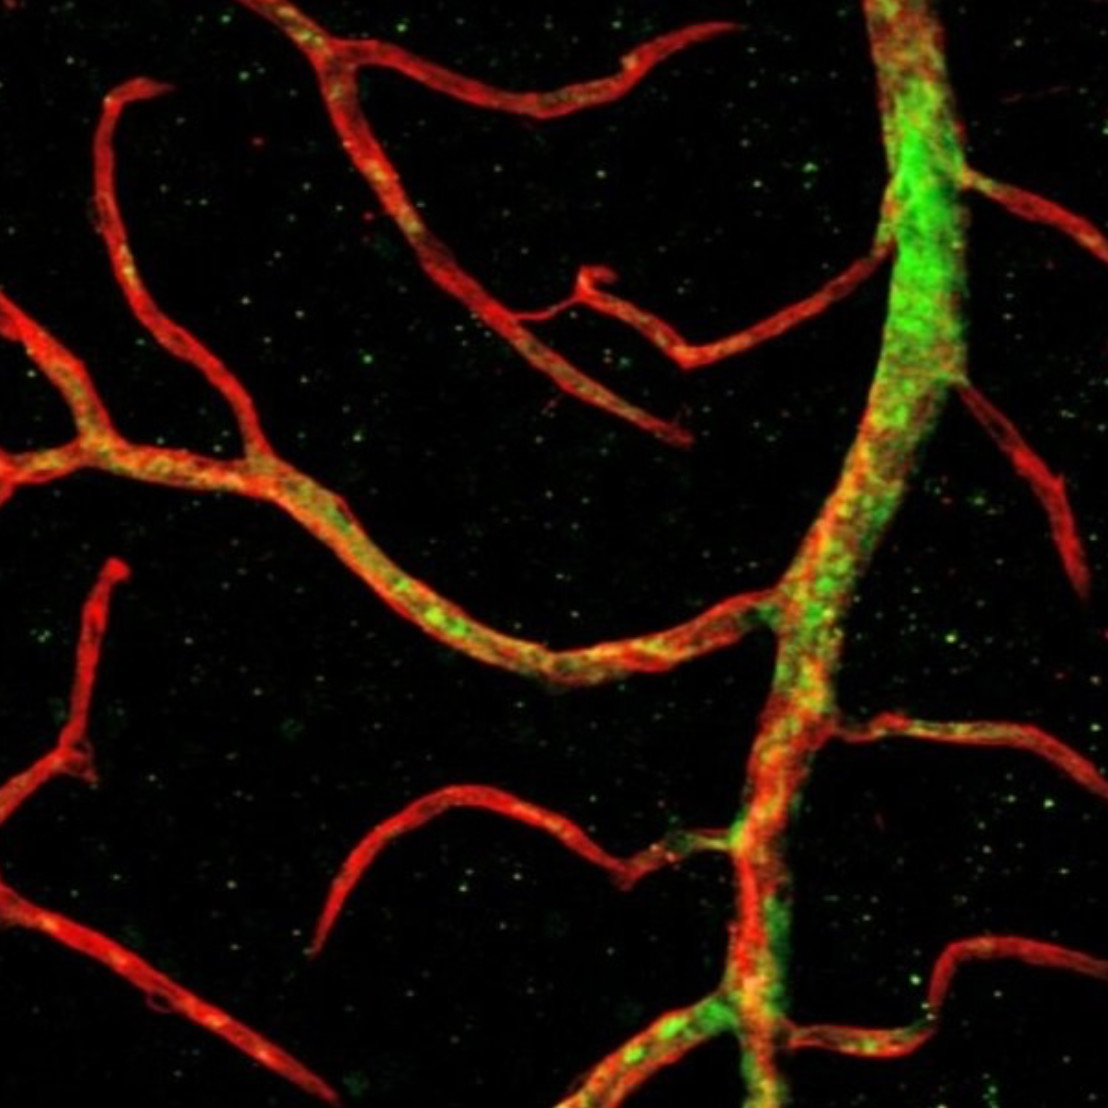 Stem cells repair blood vessels in the eye